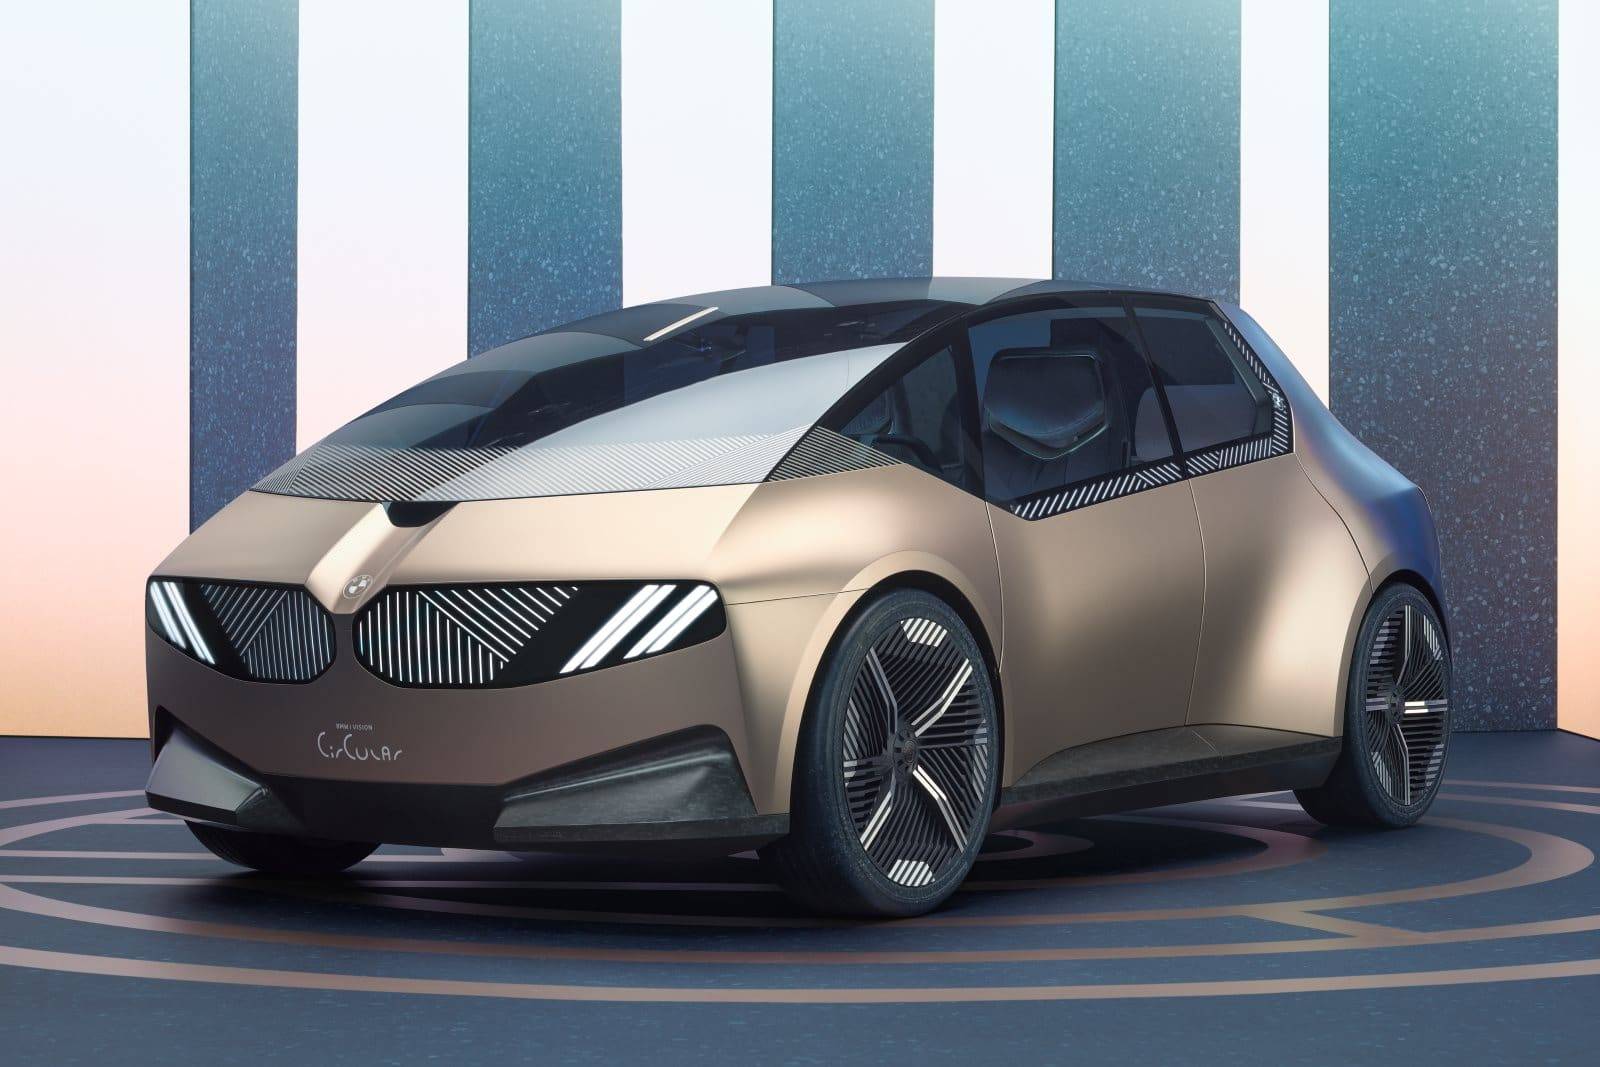 ستنتج BMW عجلات من الألمنيوم المعاد تدويره باستخدام تكنولوجيا مستدامة 100٪.